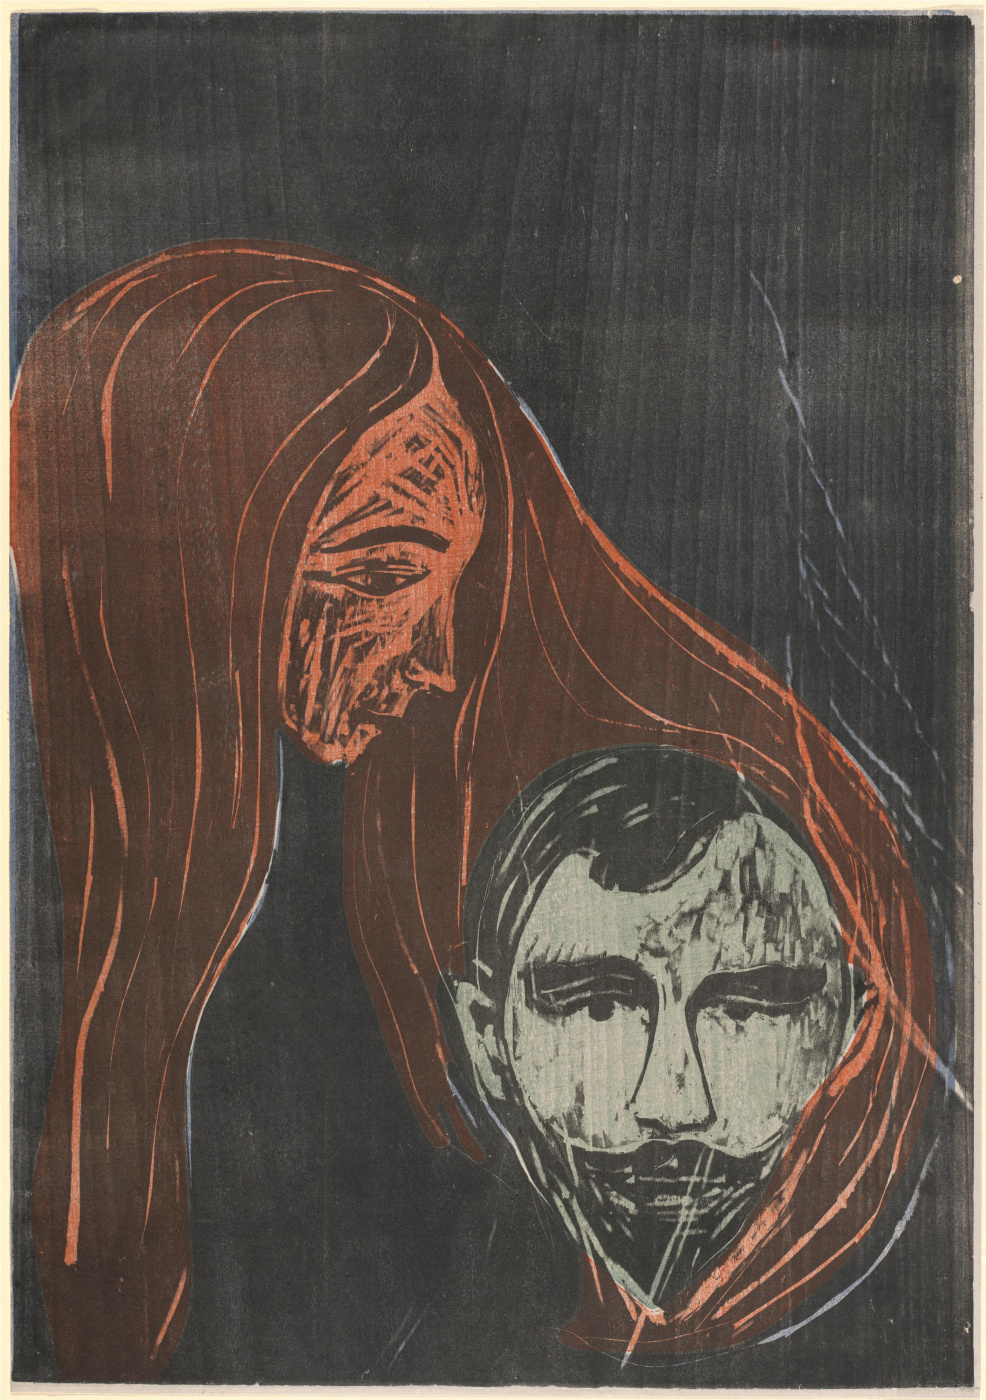 Эдвард Мунк. "Мужская голова в женских волосах". 1896. Национальная галерея искусств, Вашингтон.